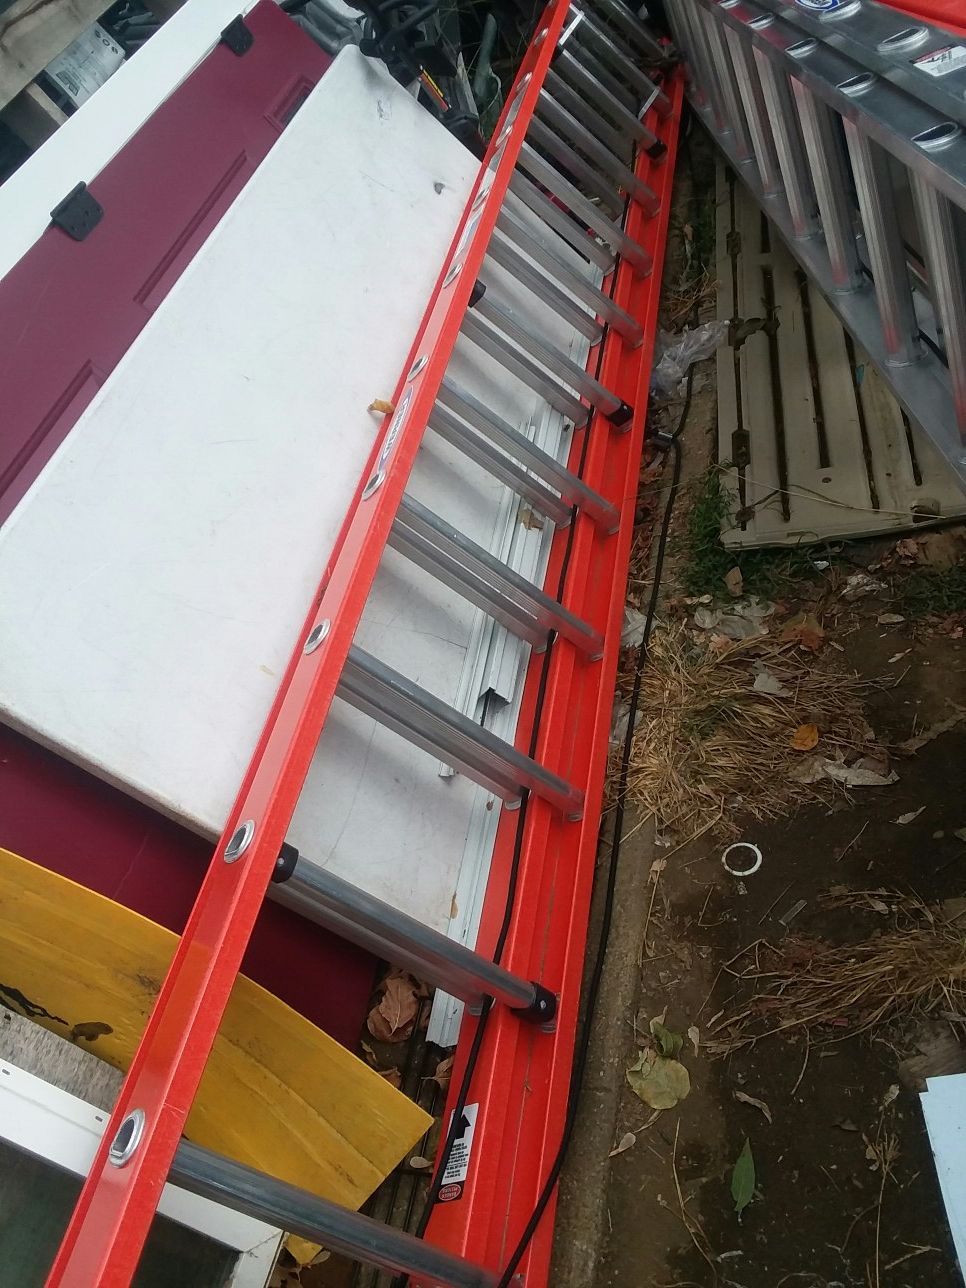 New werner 28 ft extension ladder